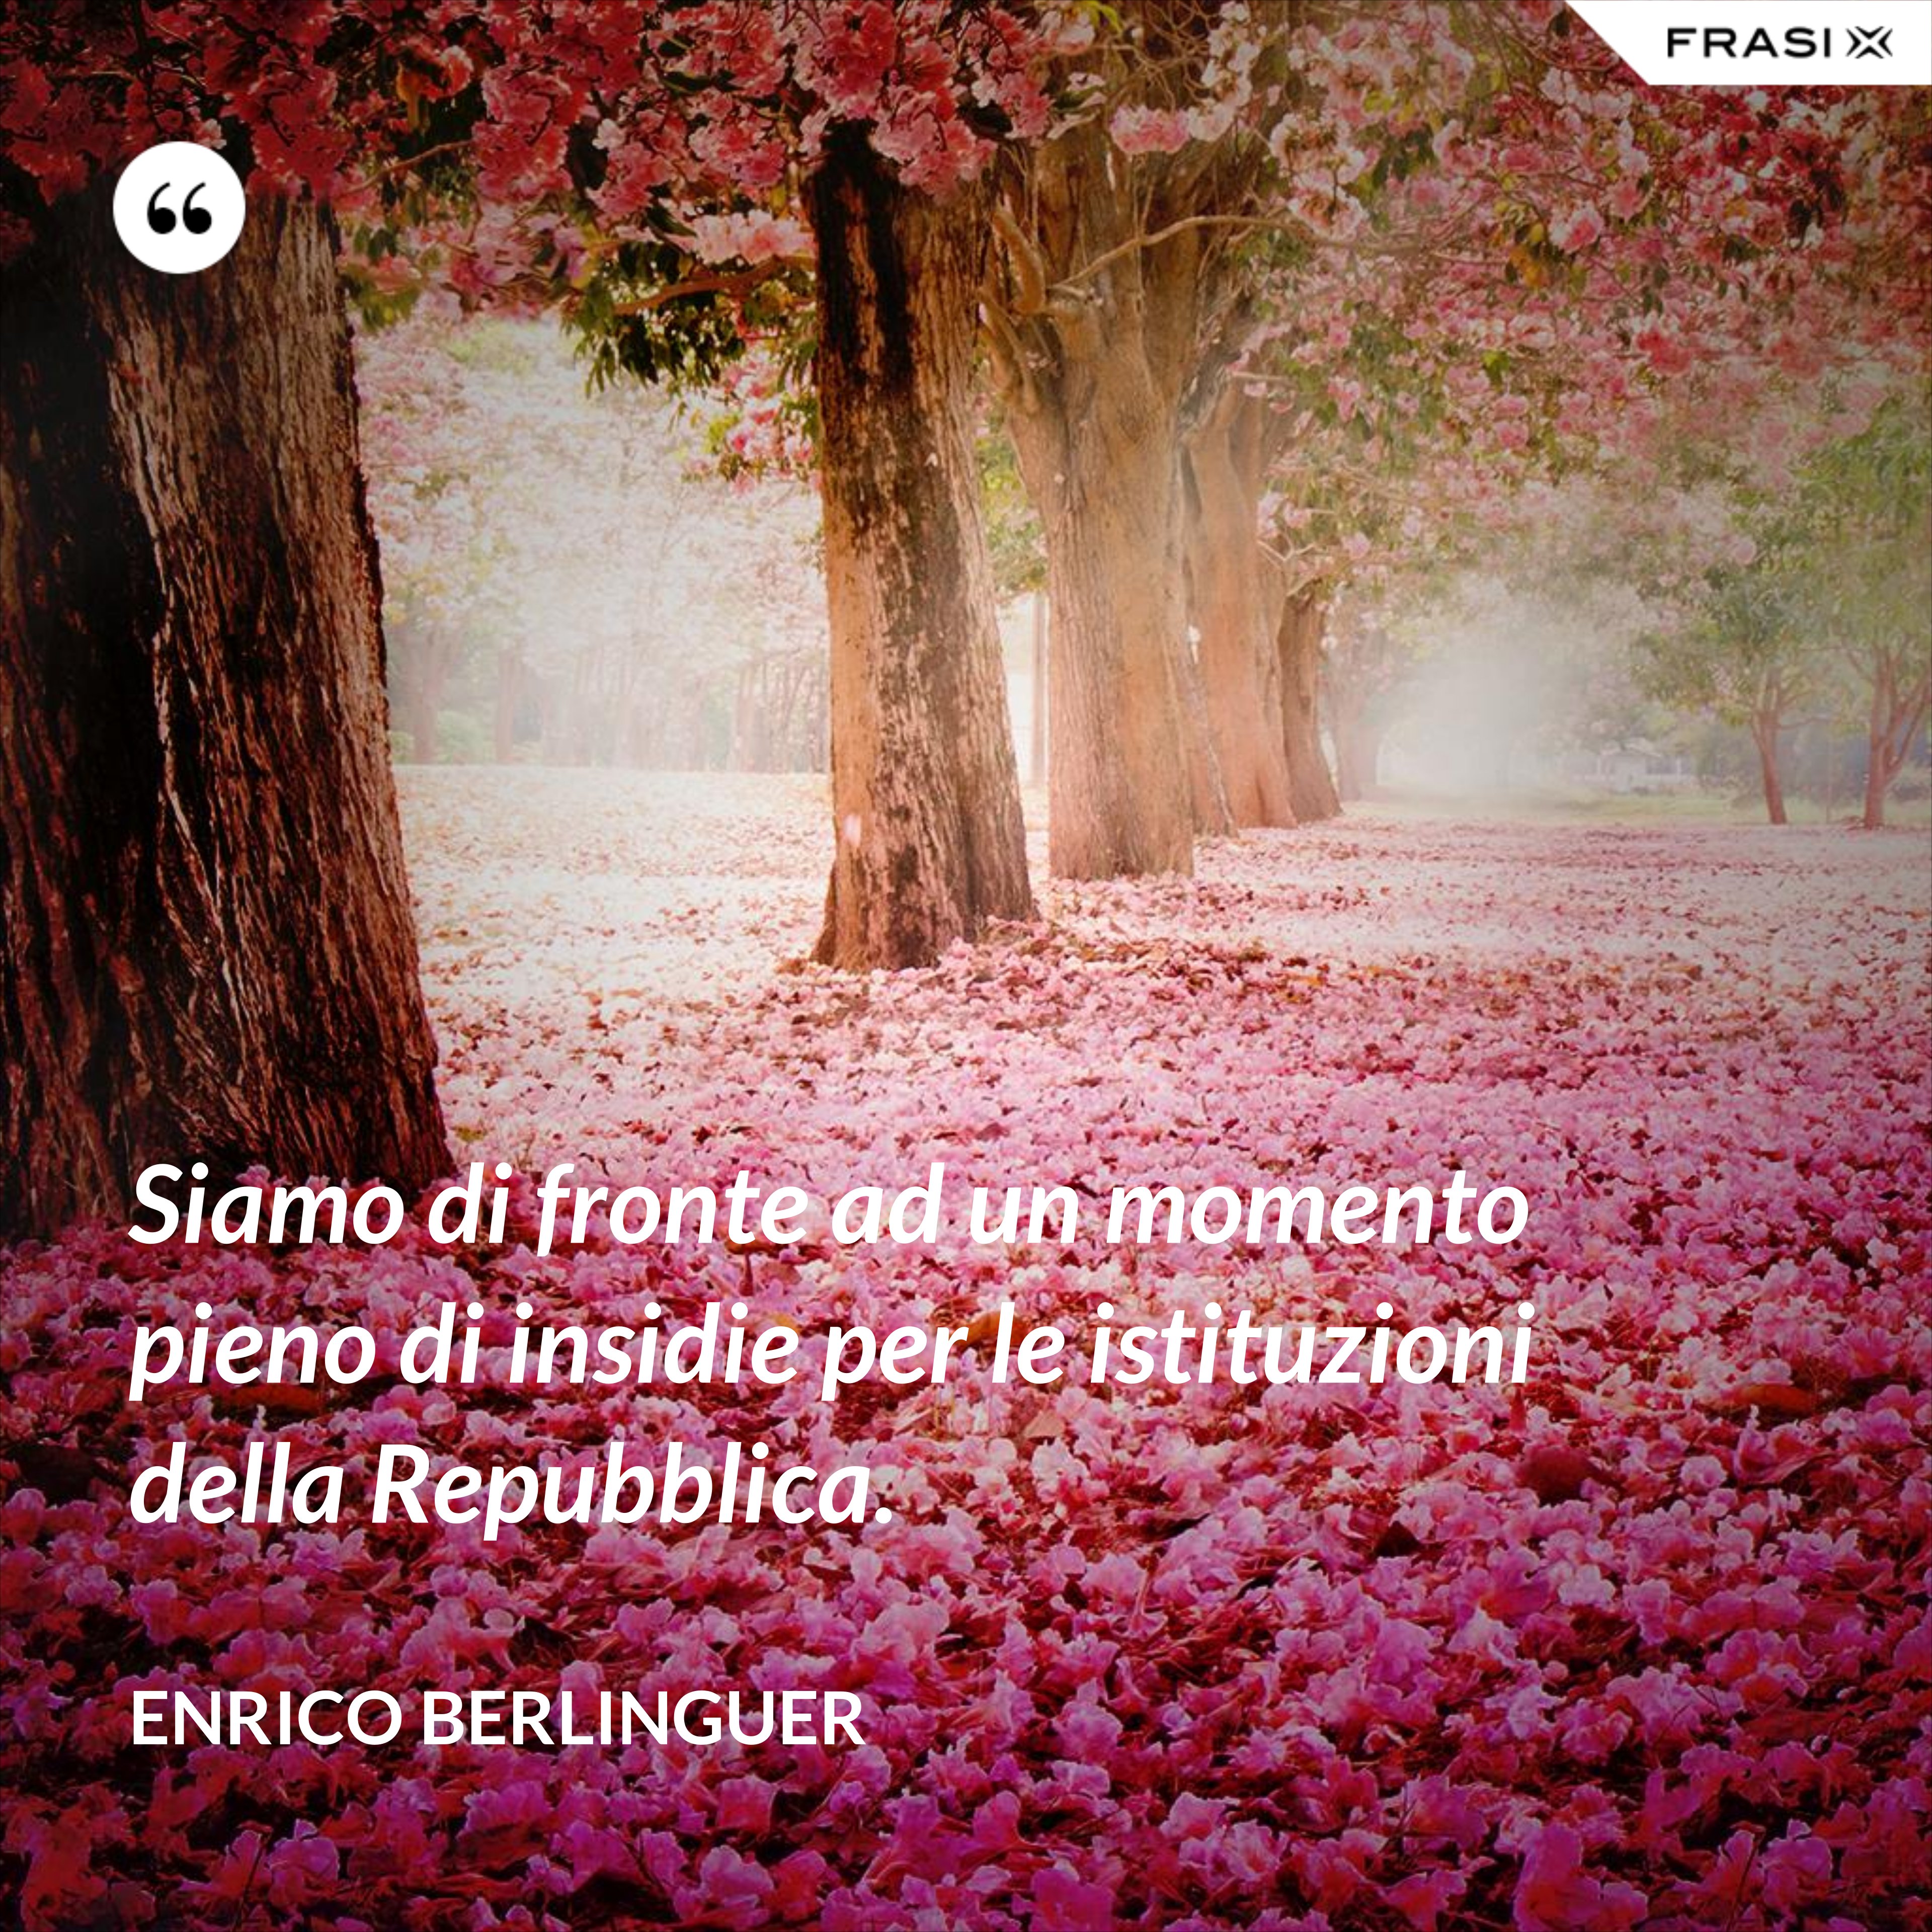 Siamo di fronte ad un momento pieno di insidie per le istituzioni della Repubblica. - Enrico Berlinguer